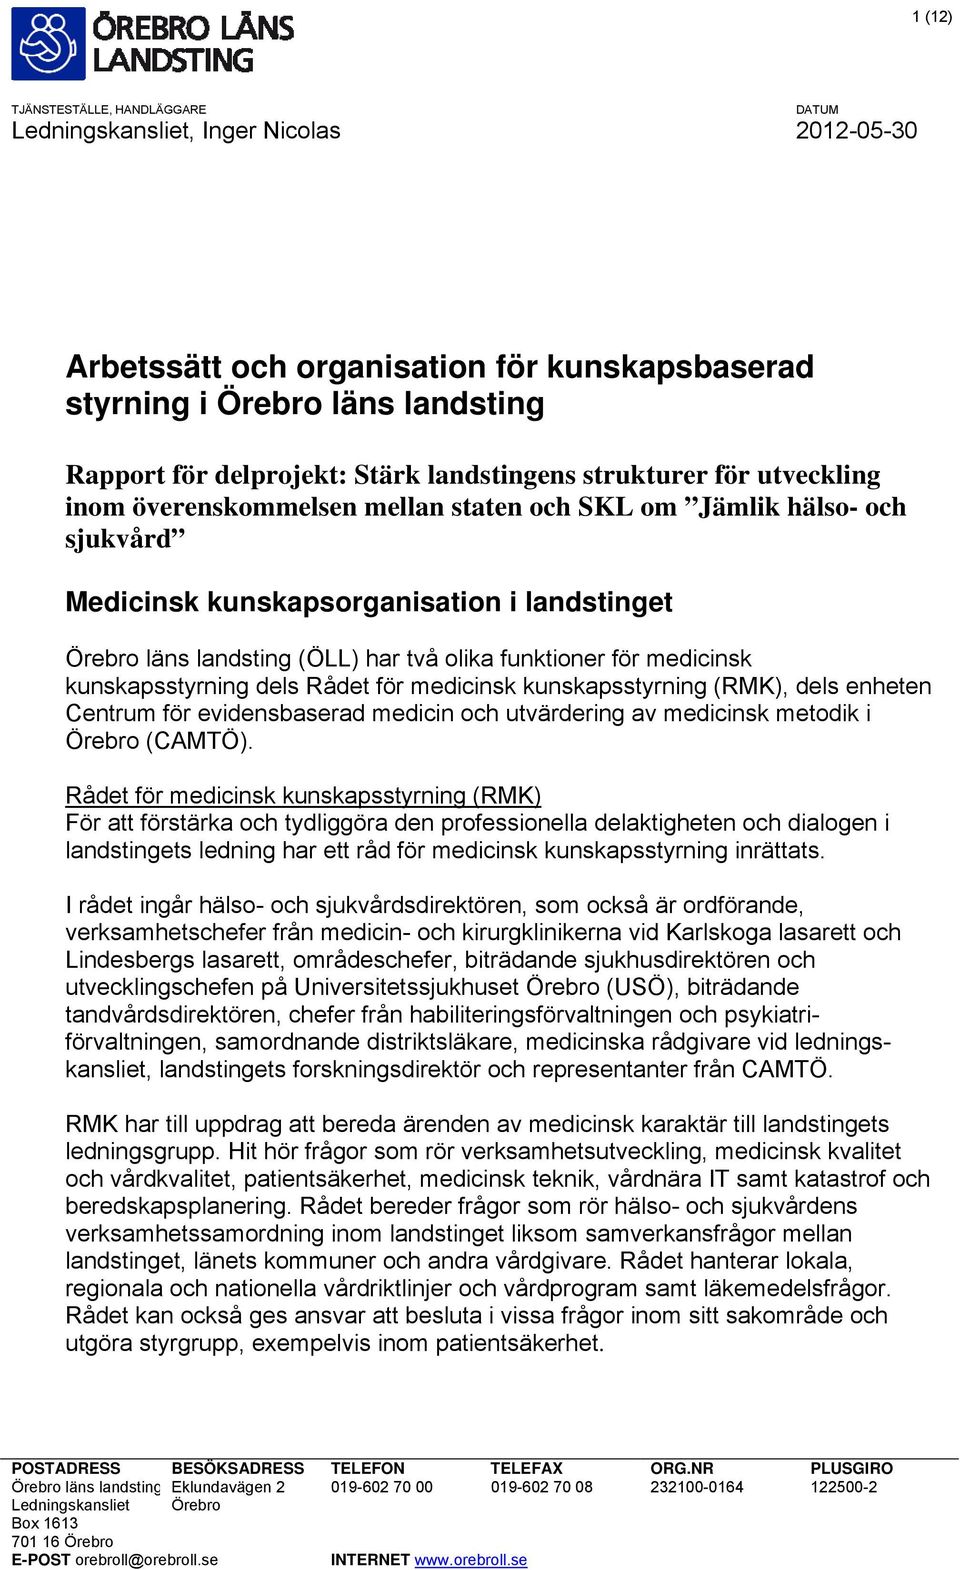 kunskapsstyrning (RMK), dels enheten Centrum för evidensbaserad medicin och utvärdering av medicinsk metodik i Örebro (CAMTÖ).